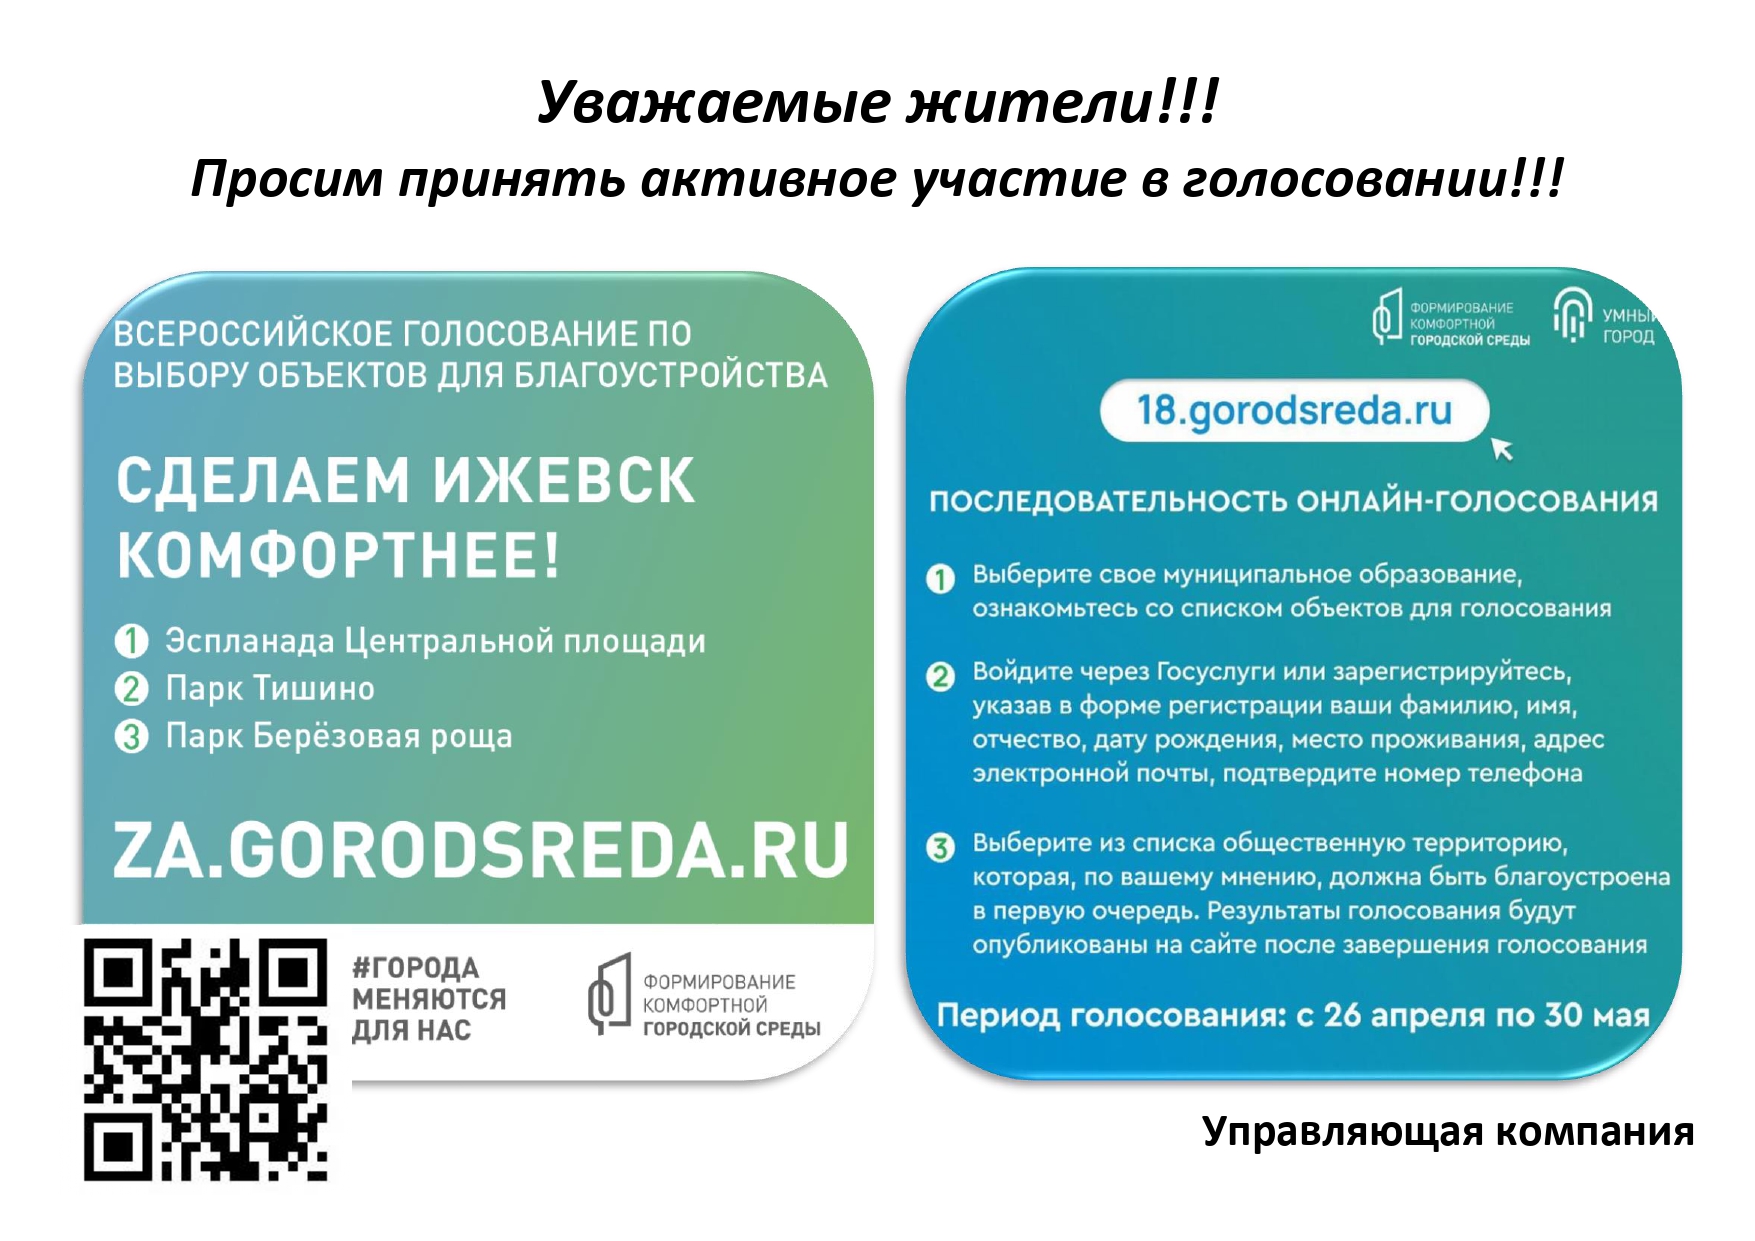 64 gorodsreda ru голосование